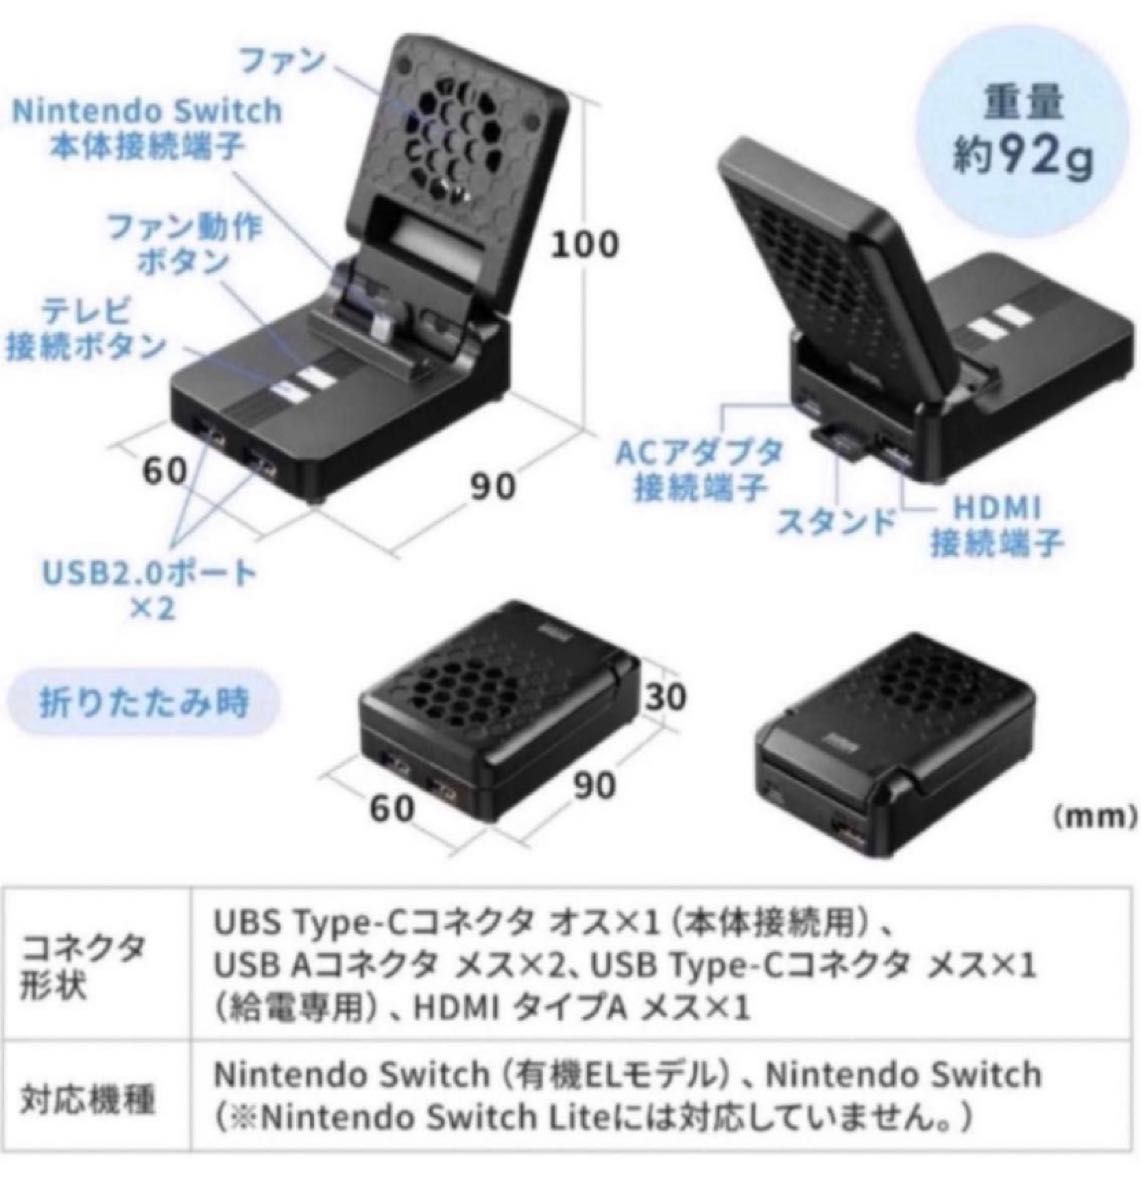 ファン付ハブ 充電スタンド Switchドック 冷却ファン USBハブ付き HDMI出力 軽量 ブラック シンプル 簡単接続 激安